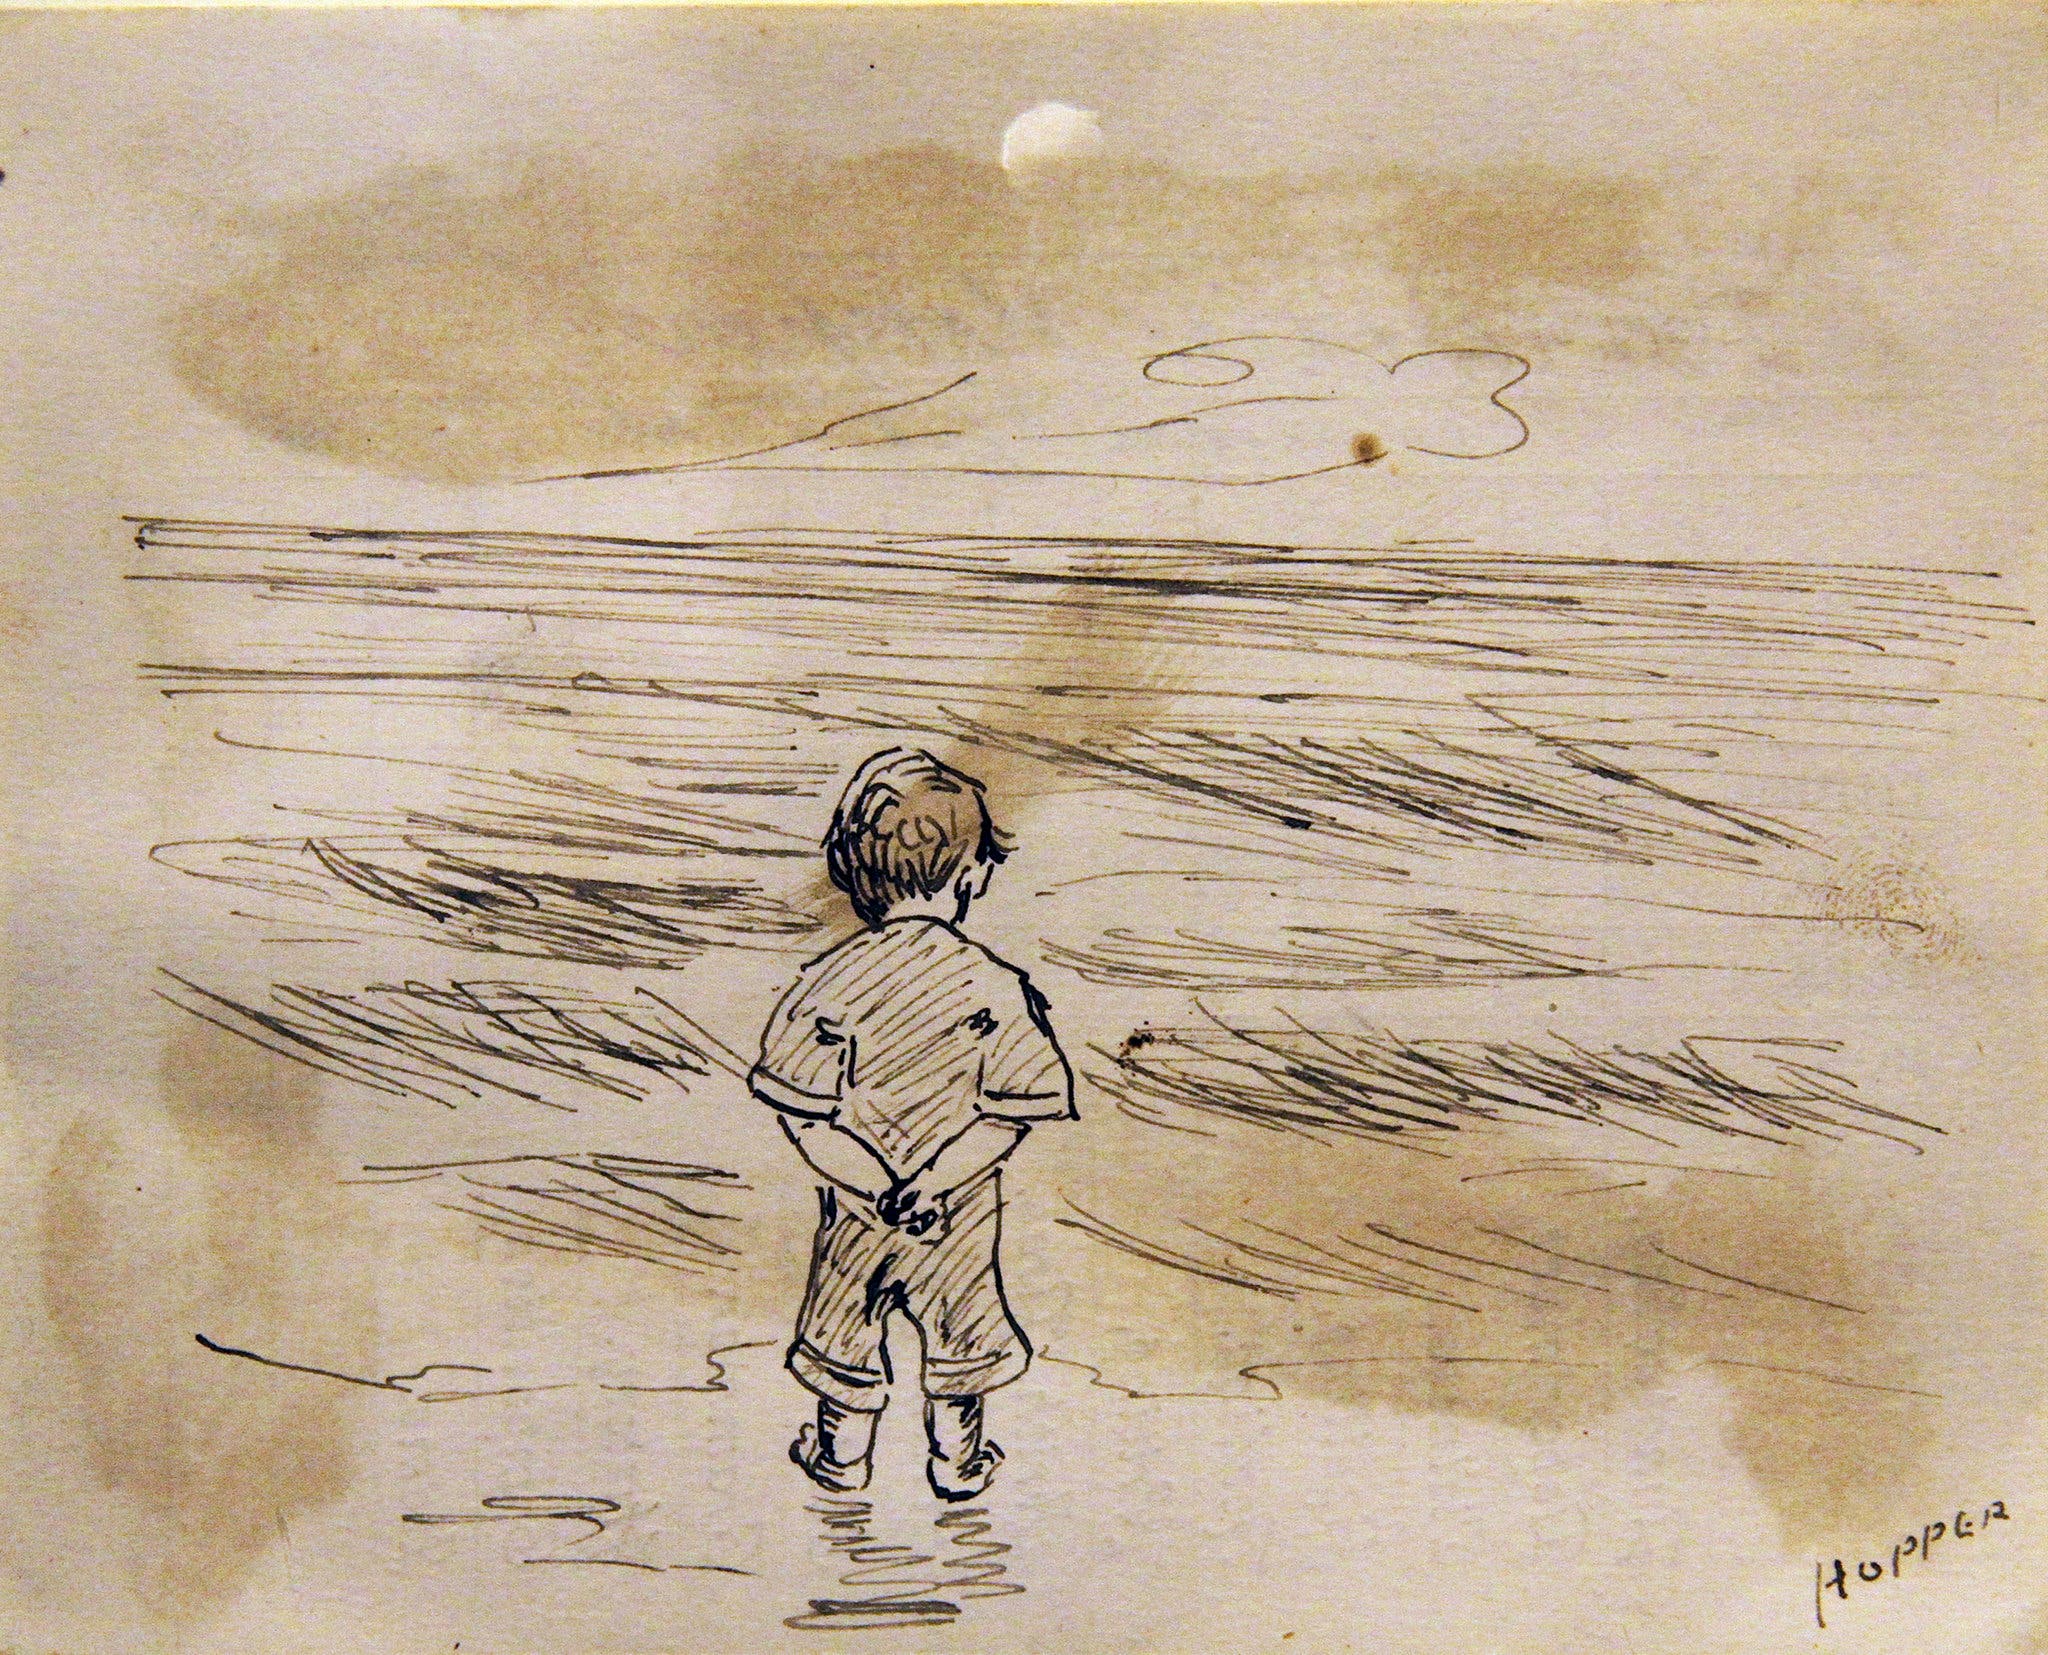 Malý chlapec dívající se na moře by Edward Hopper - 1891 - 11,43 x 8,89 cm 